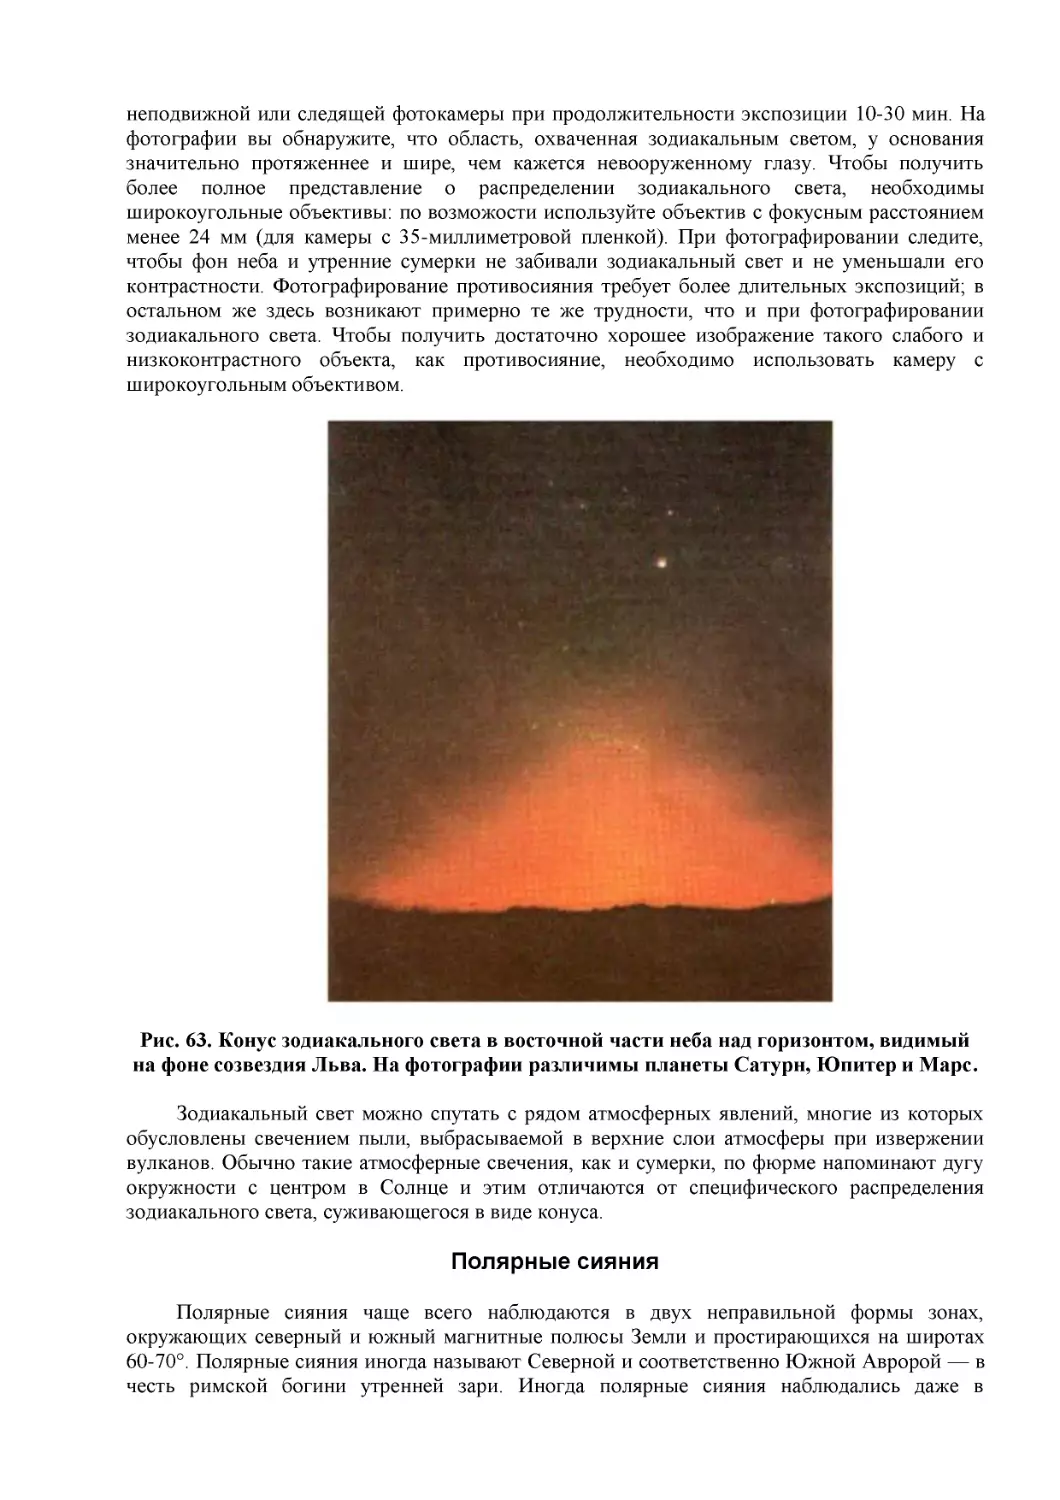 Рис. 63. Конус зодиакального света в восточной части неба над горизонтом, видимый на фоне созвездия Льва. На фотографии различимы планеты Сатурн, Юпитер и Марс.
Полярные сияния